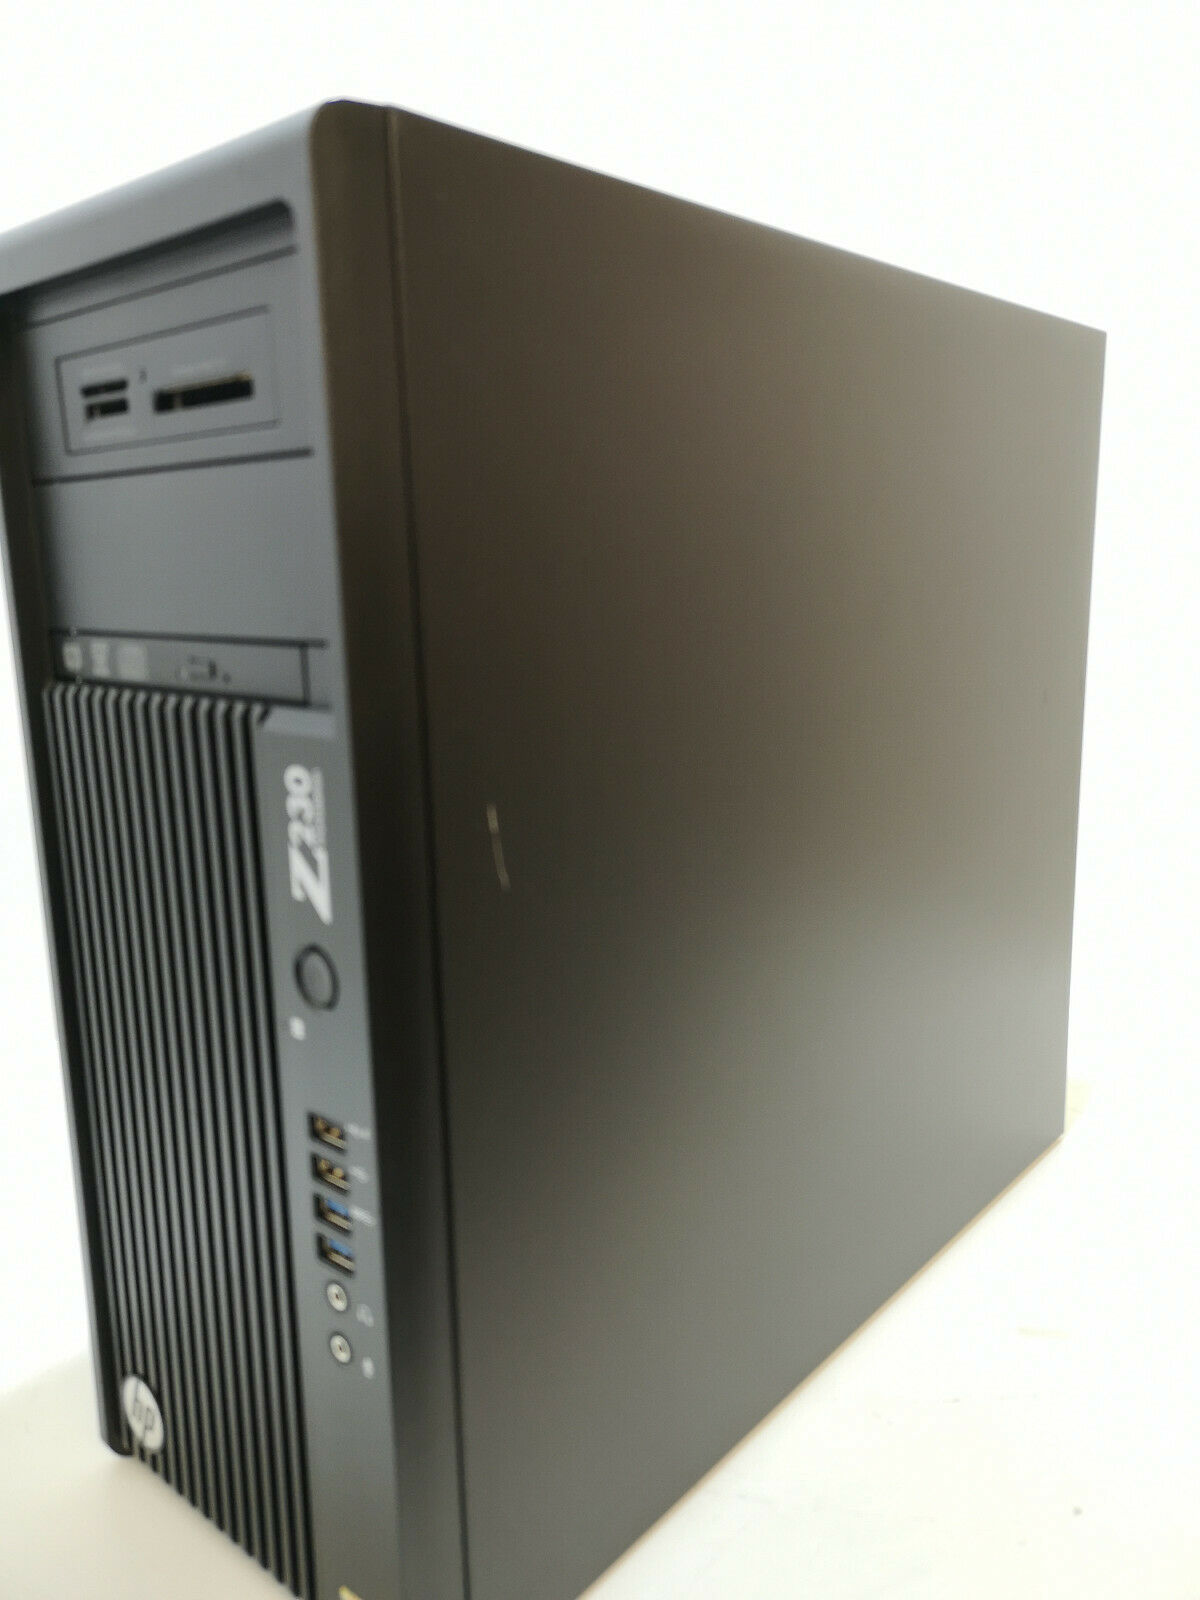 Refurbished HP Z230 Workstation Desktop Tower PC